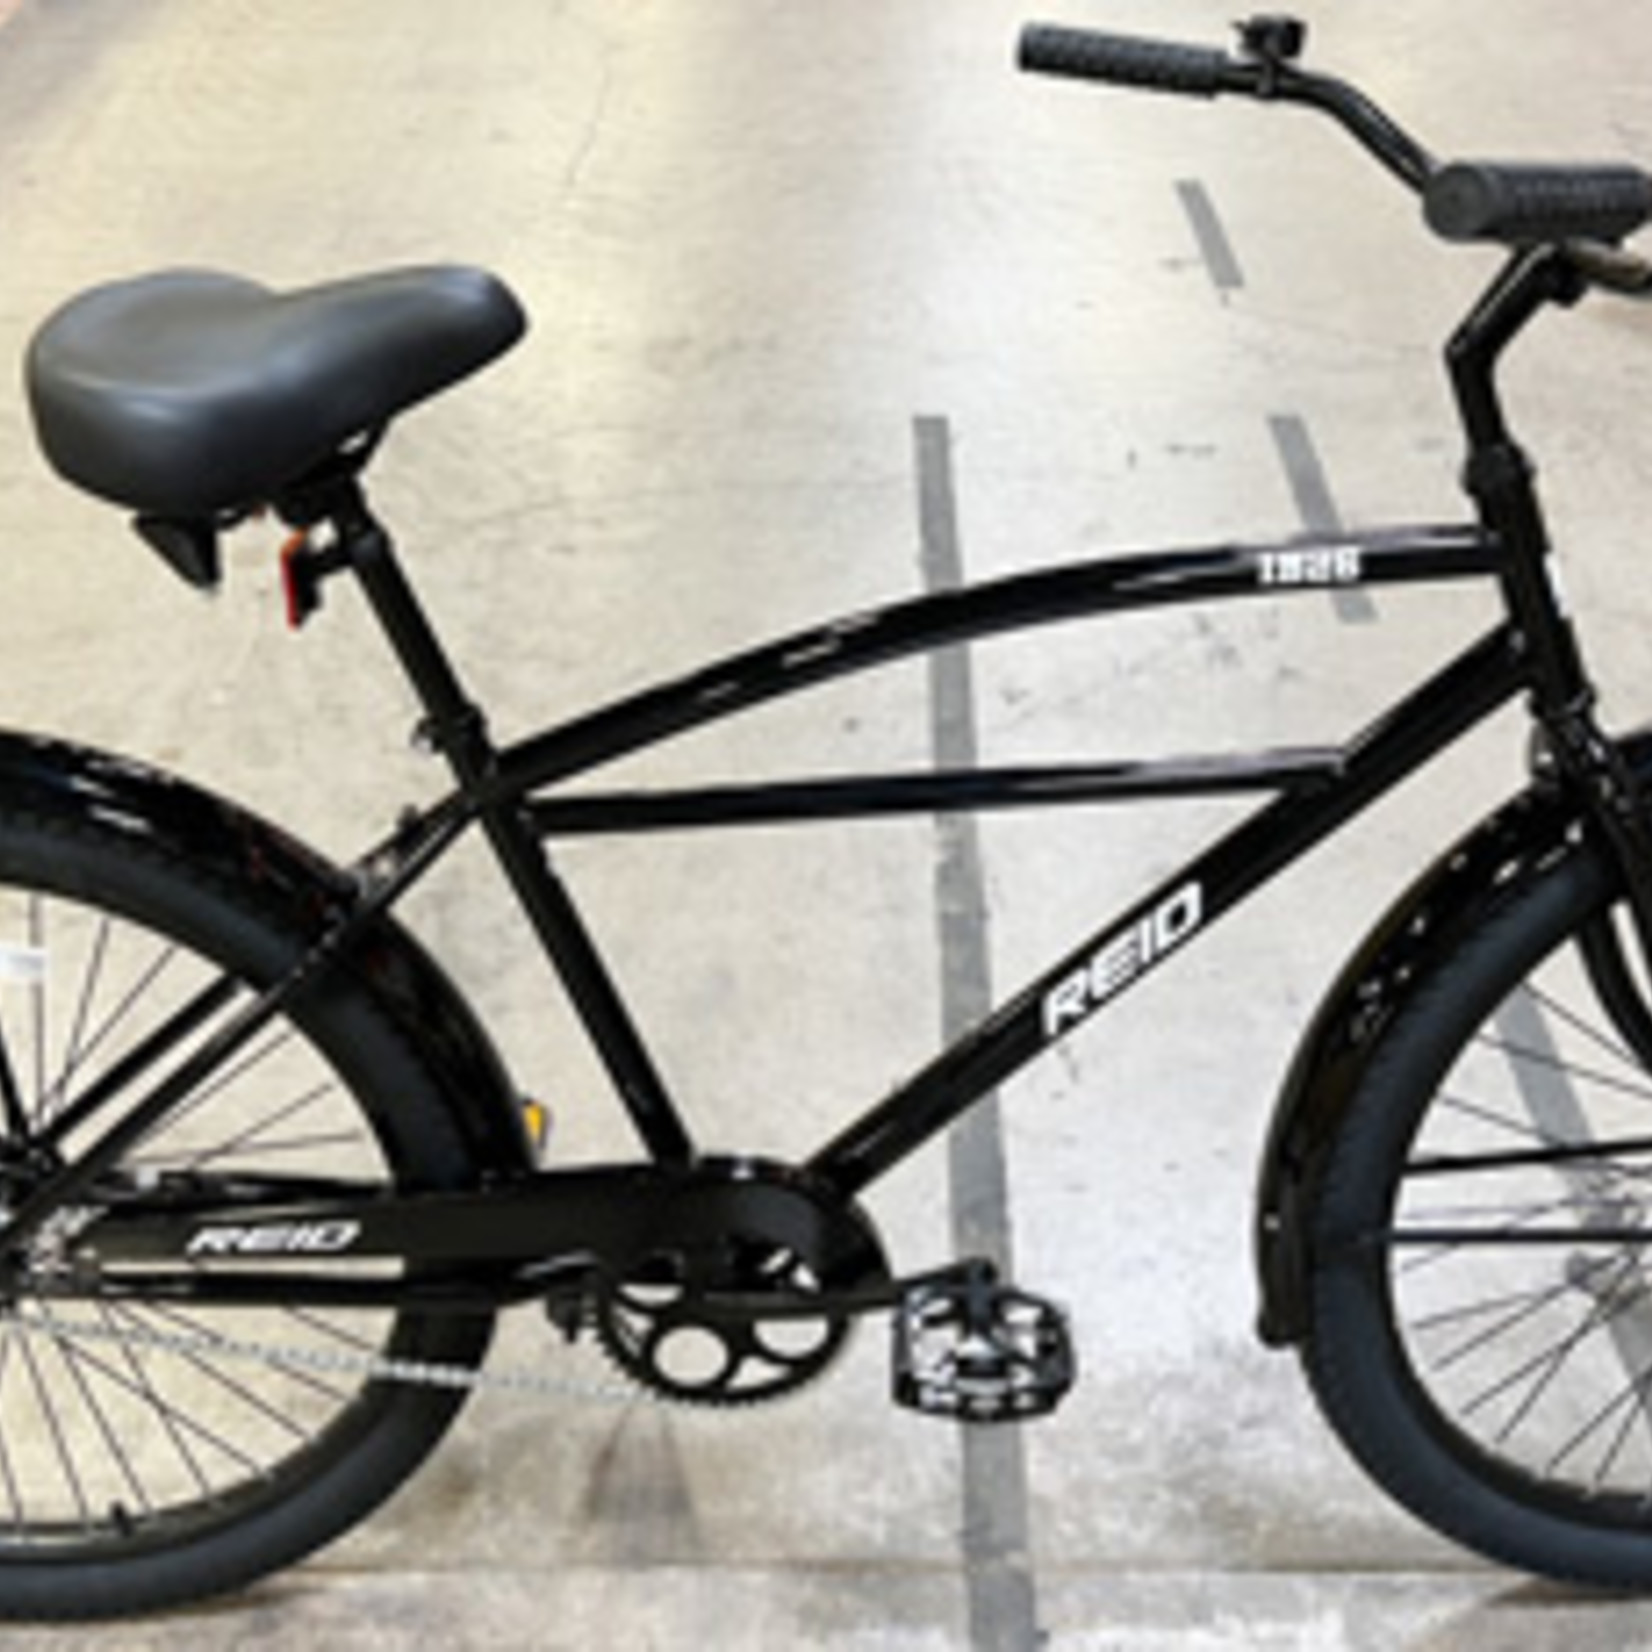 Reid Reid Industrial Bike